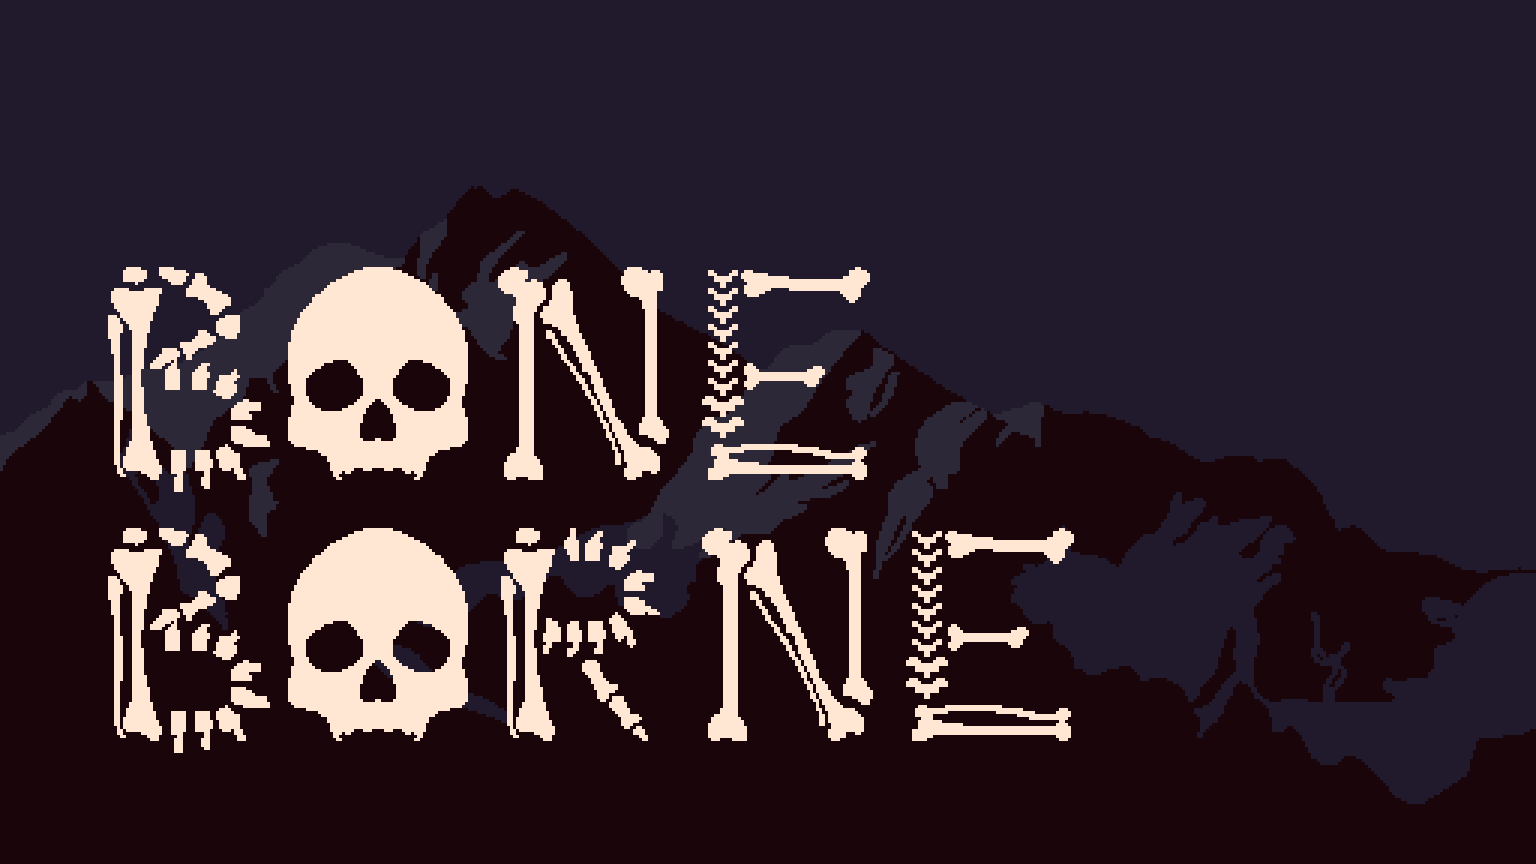 BoneBorne